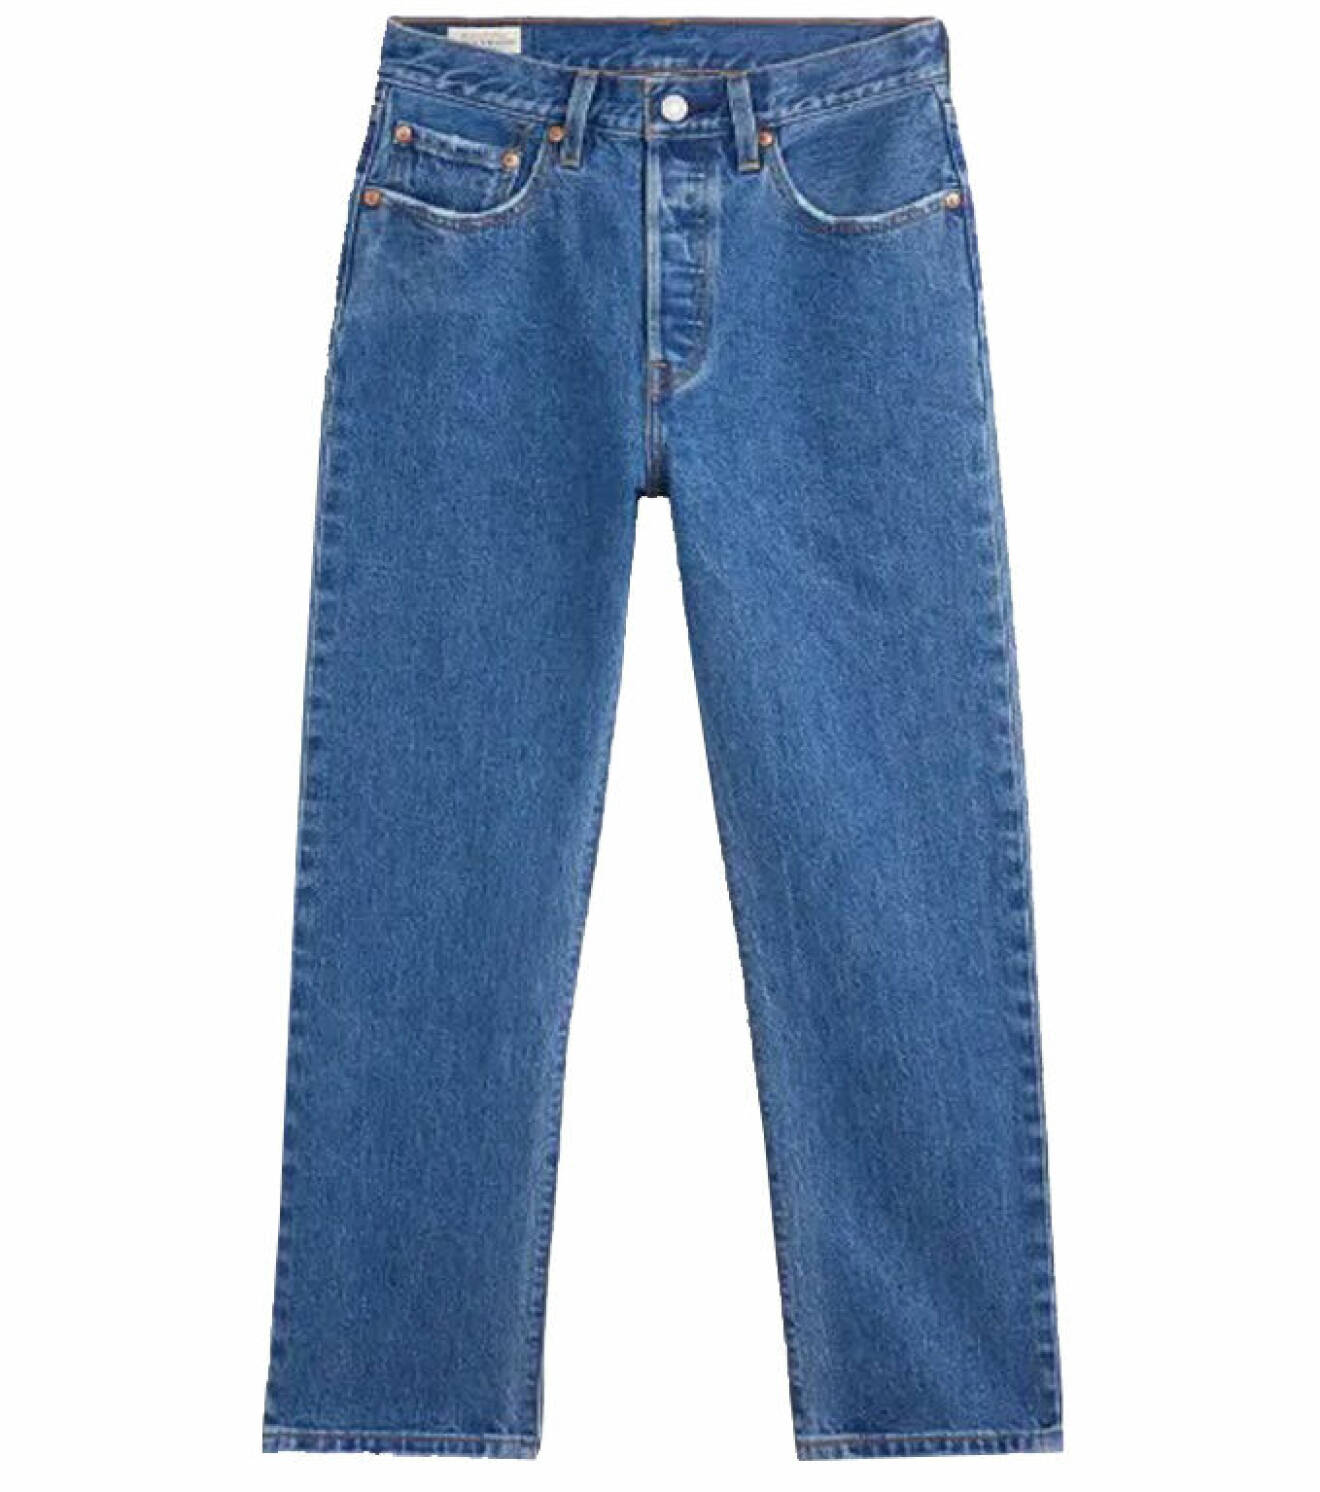 Blanda kvalitet och budget - raka jeans från Levi's